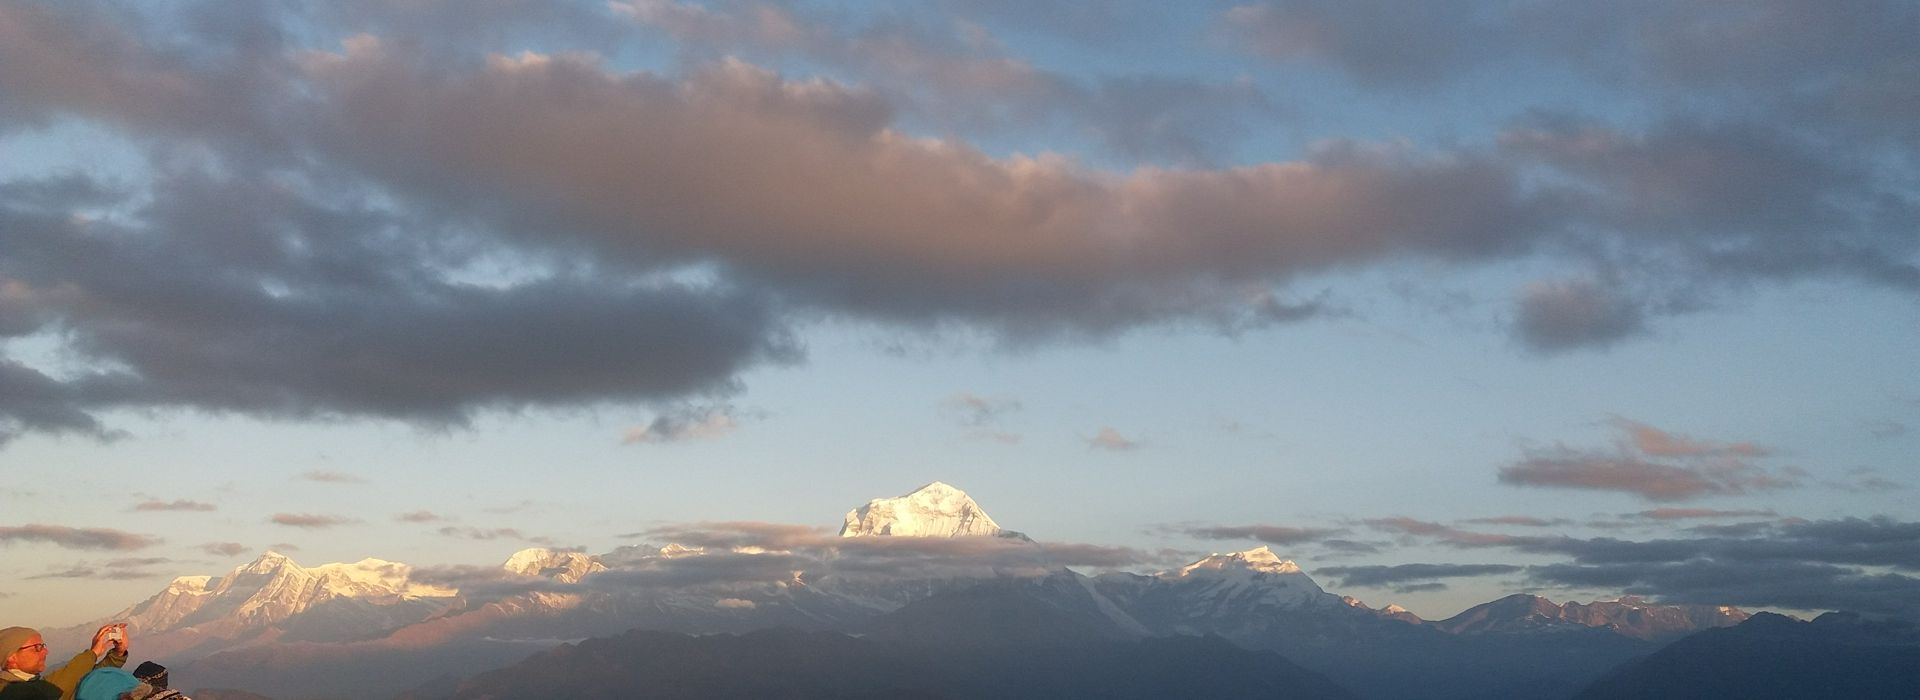 Sherpa Himalaya-Ghorepani-poonhill Trek (9).jpg